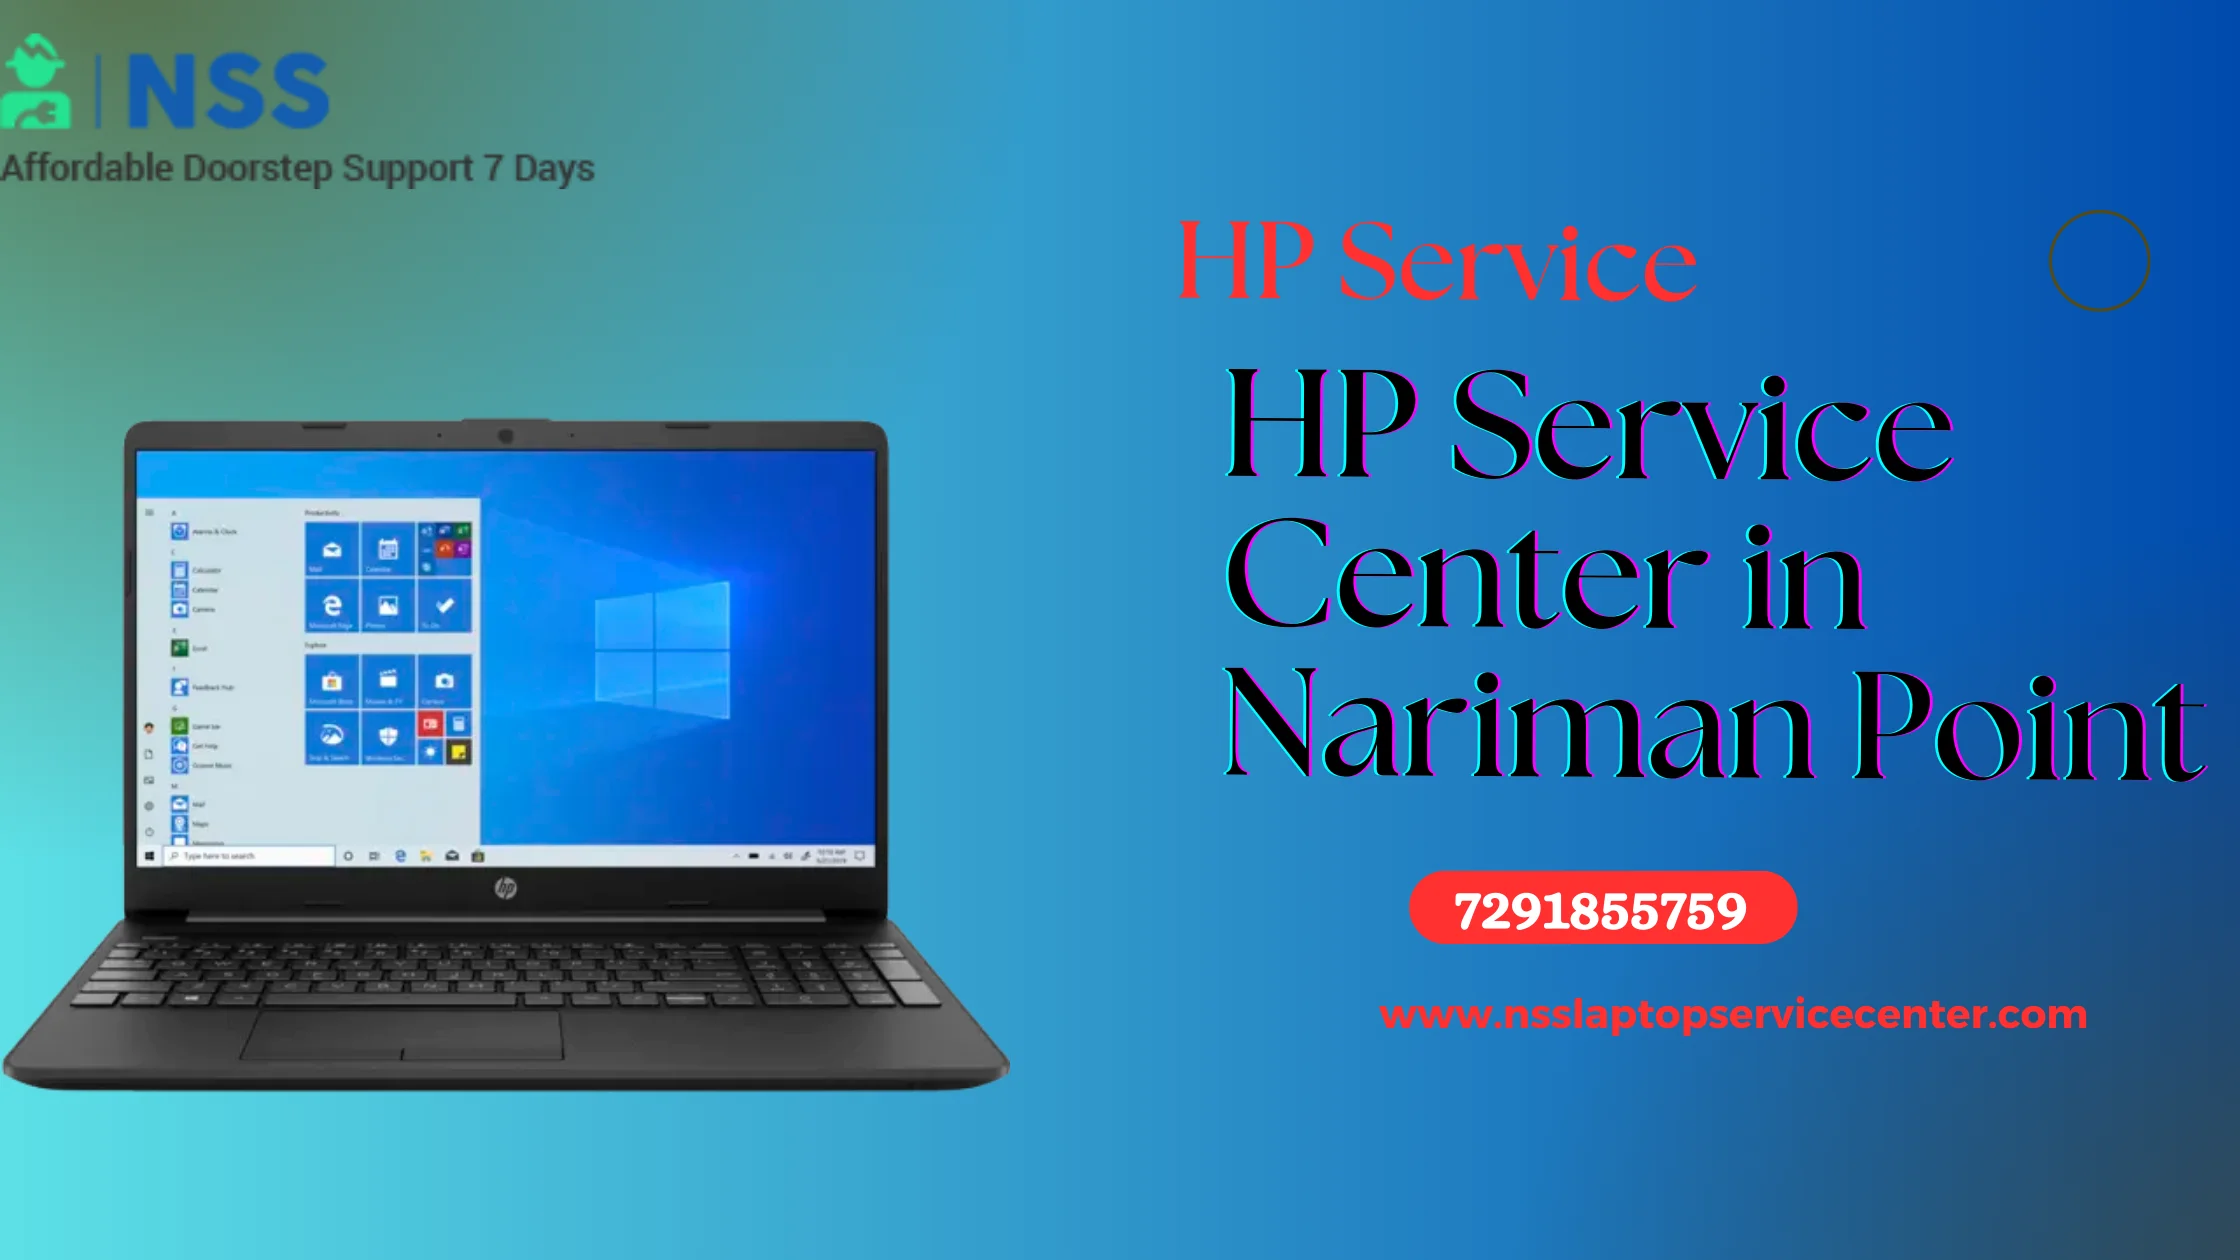 HP Service Center in Nariman Point Near Mumbai